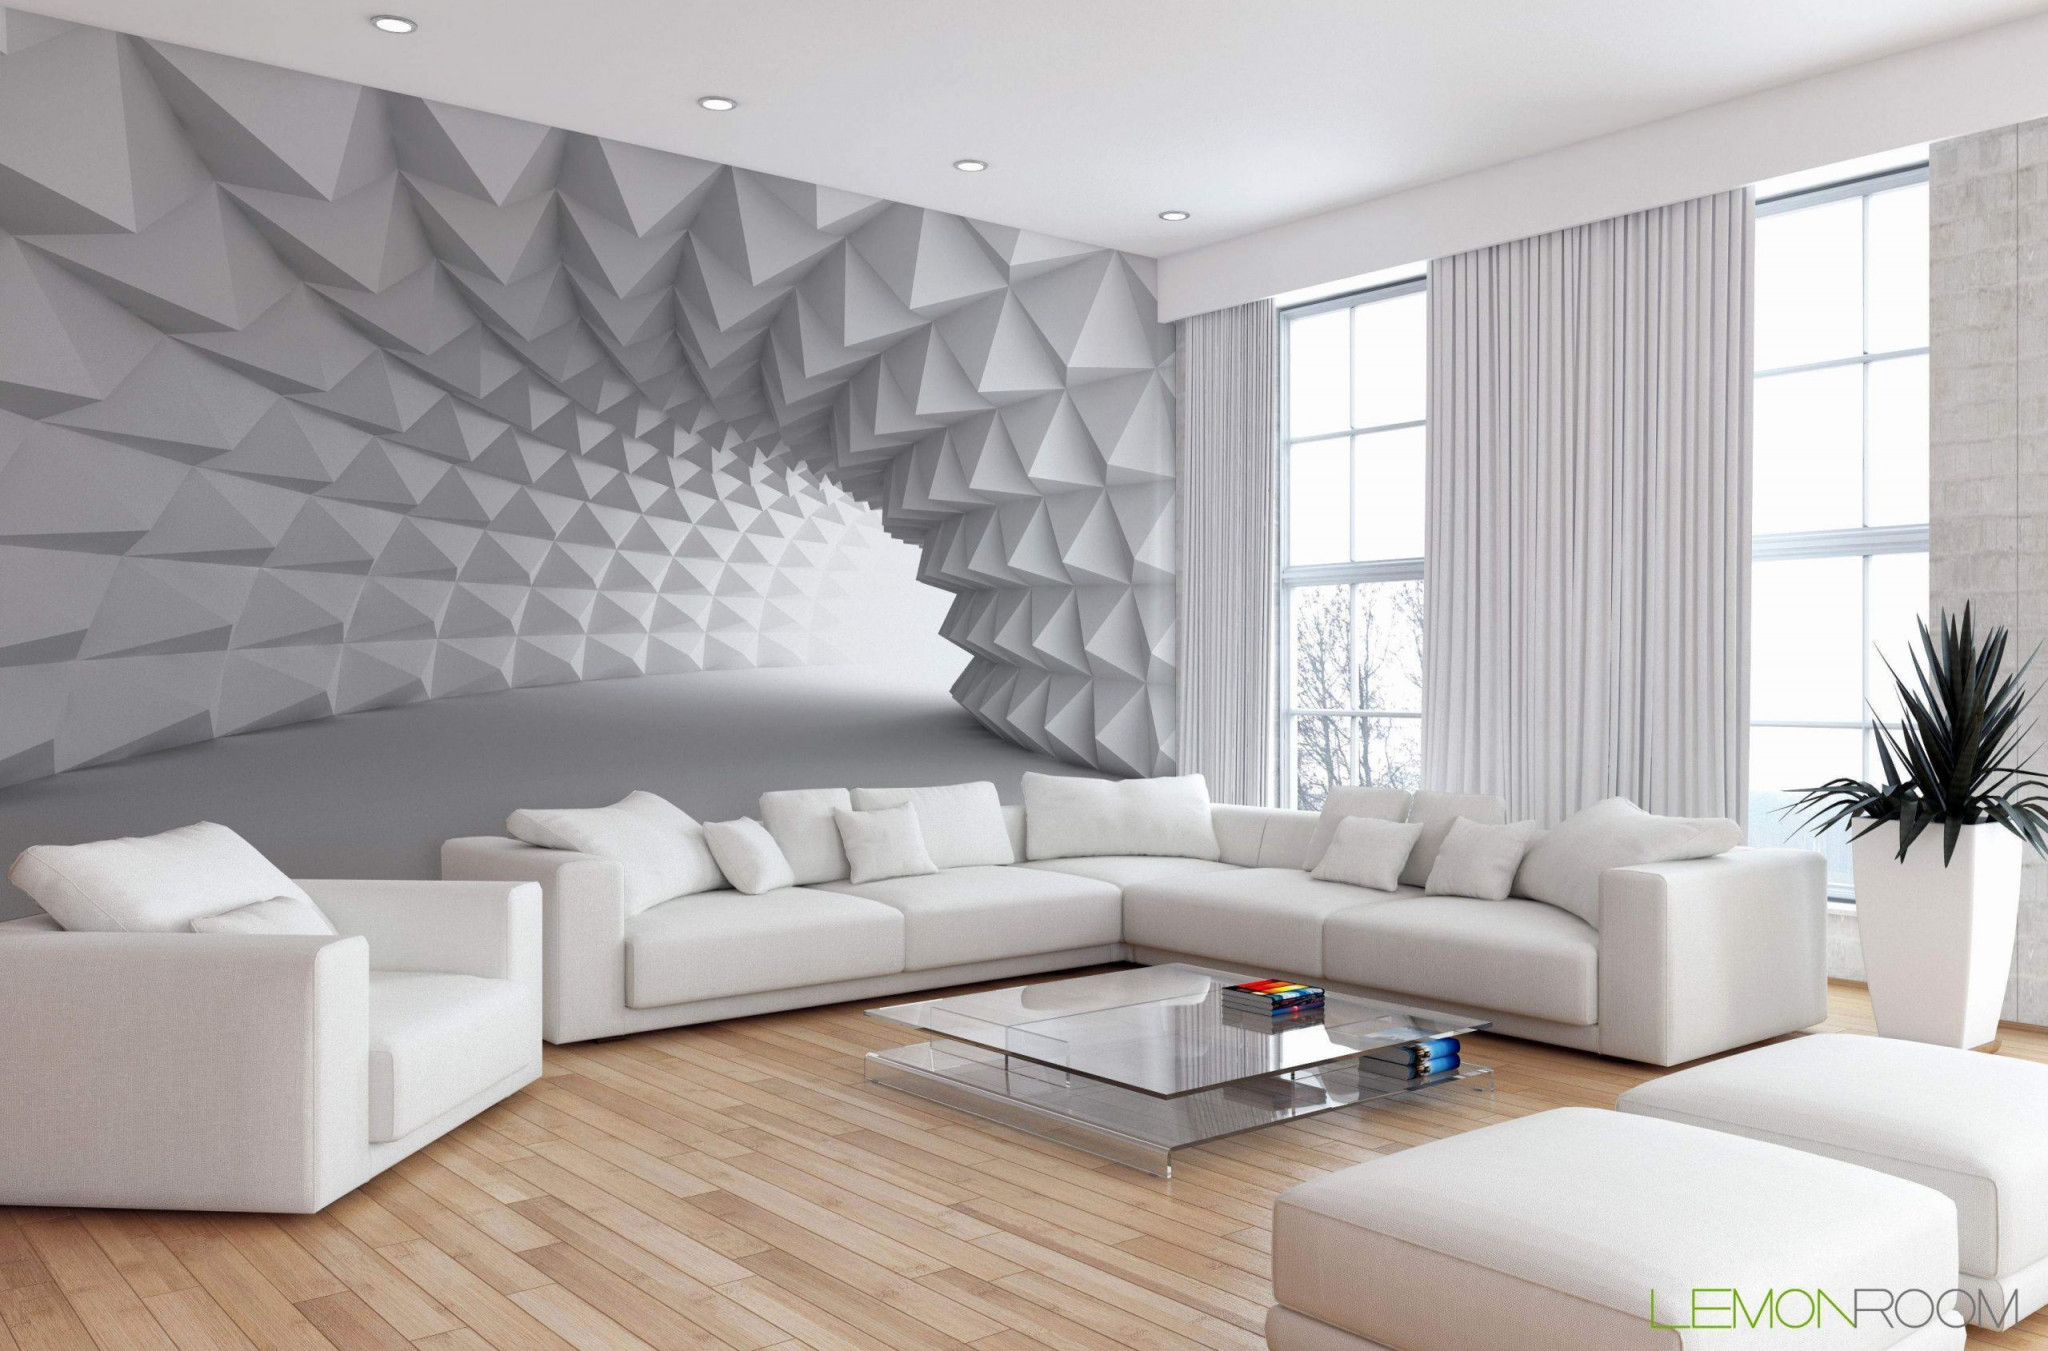 Außergewöhnliche Wohnzimmer Ideen Tapeten  23 In 2020 von Tapeten Für Wohnzimmer Ideen Bild